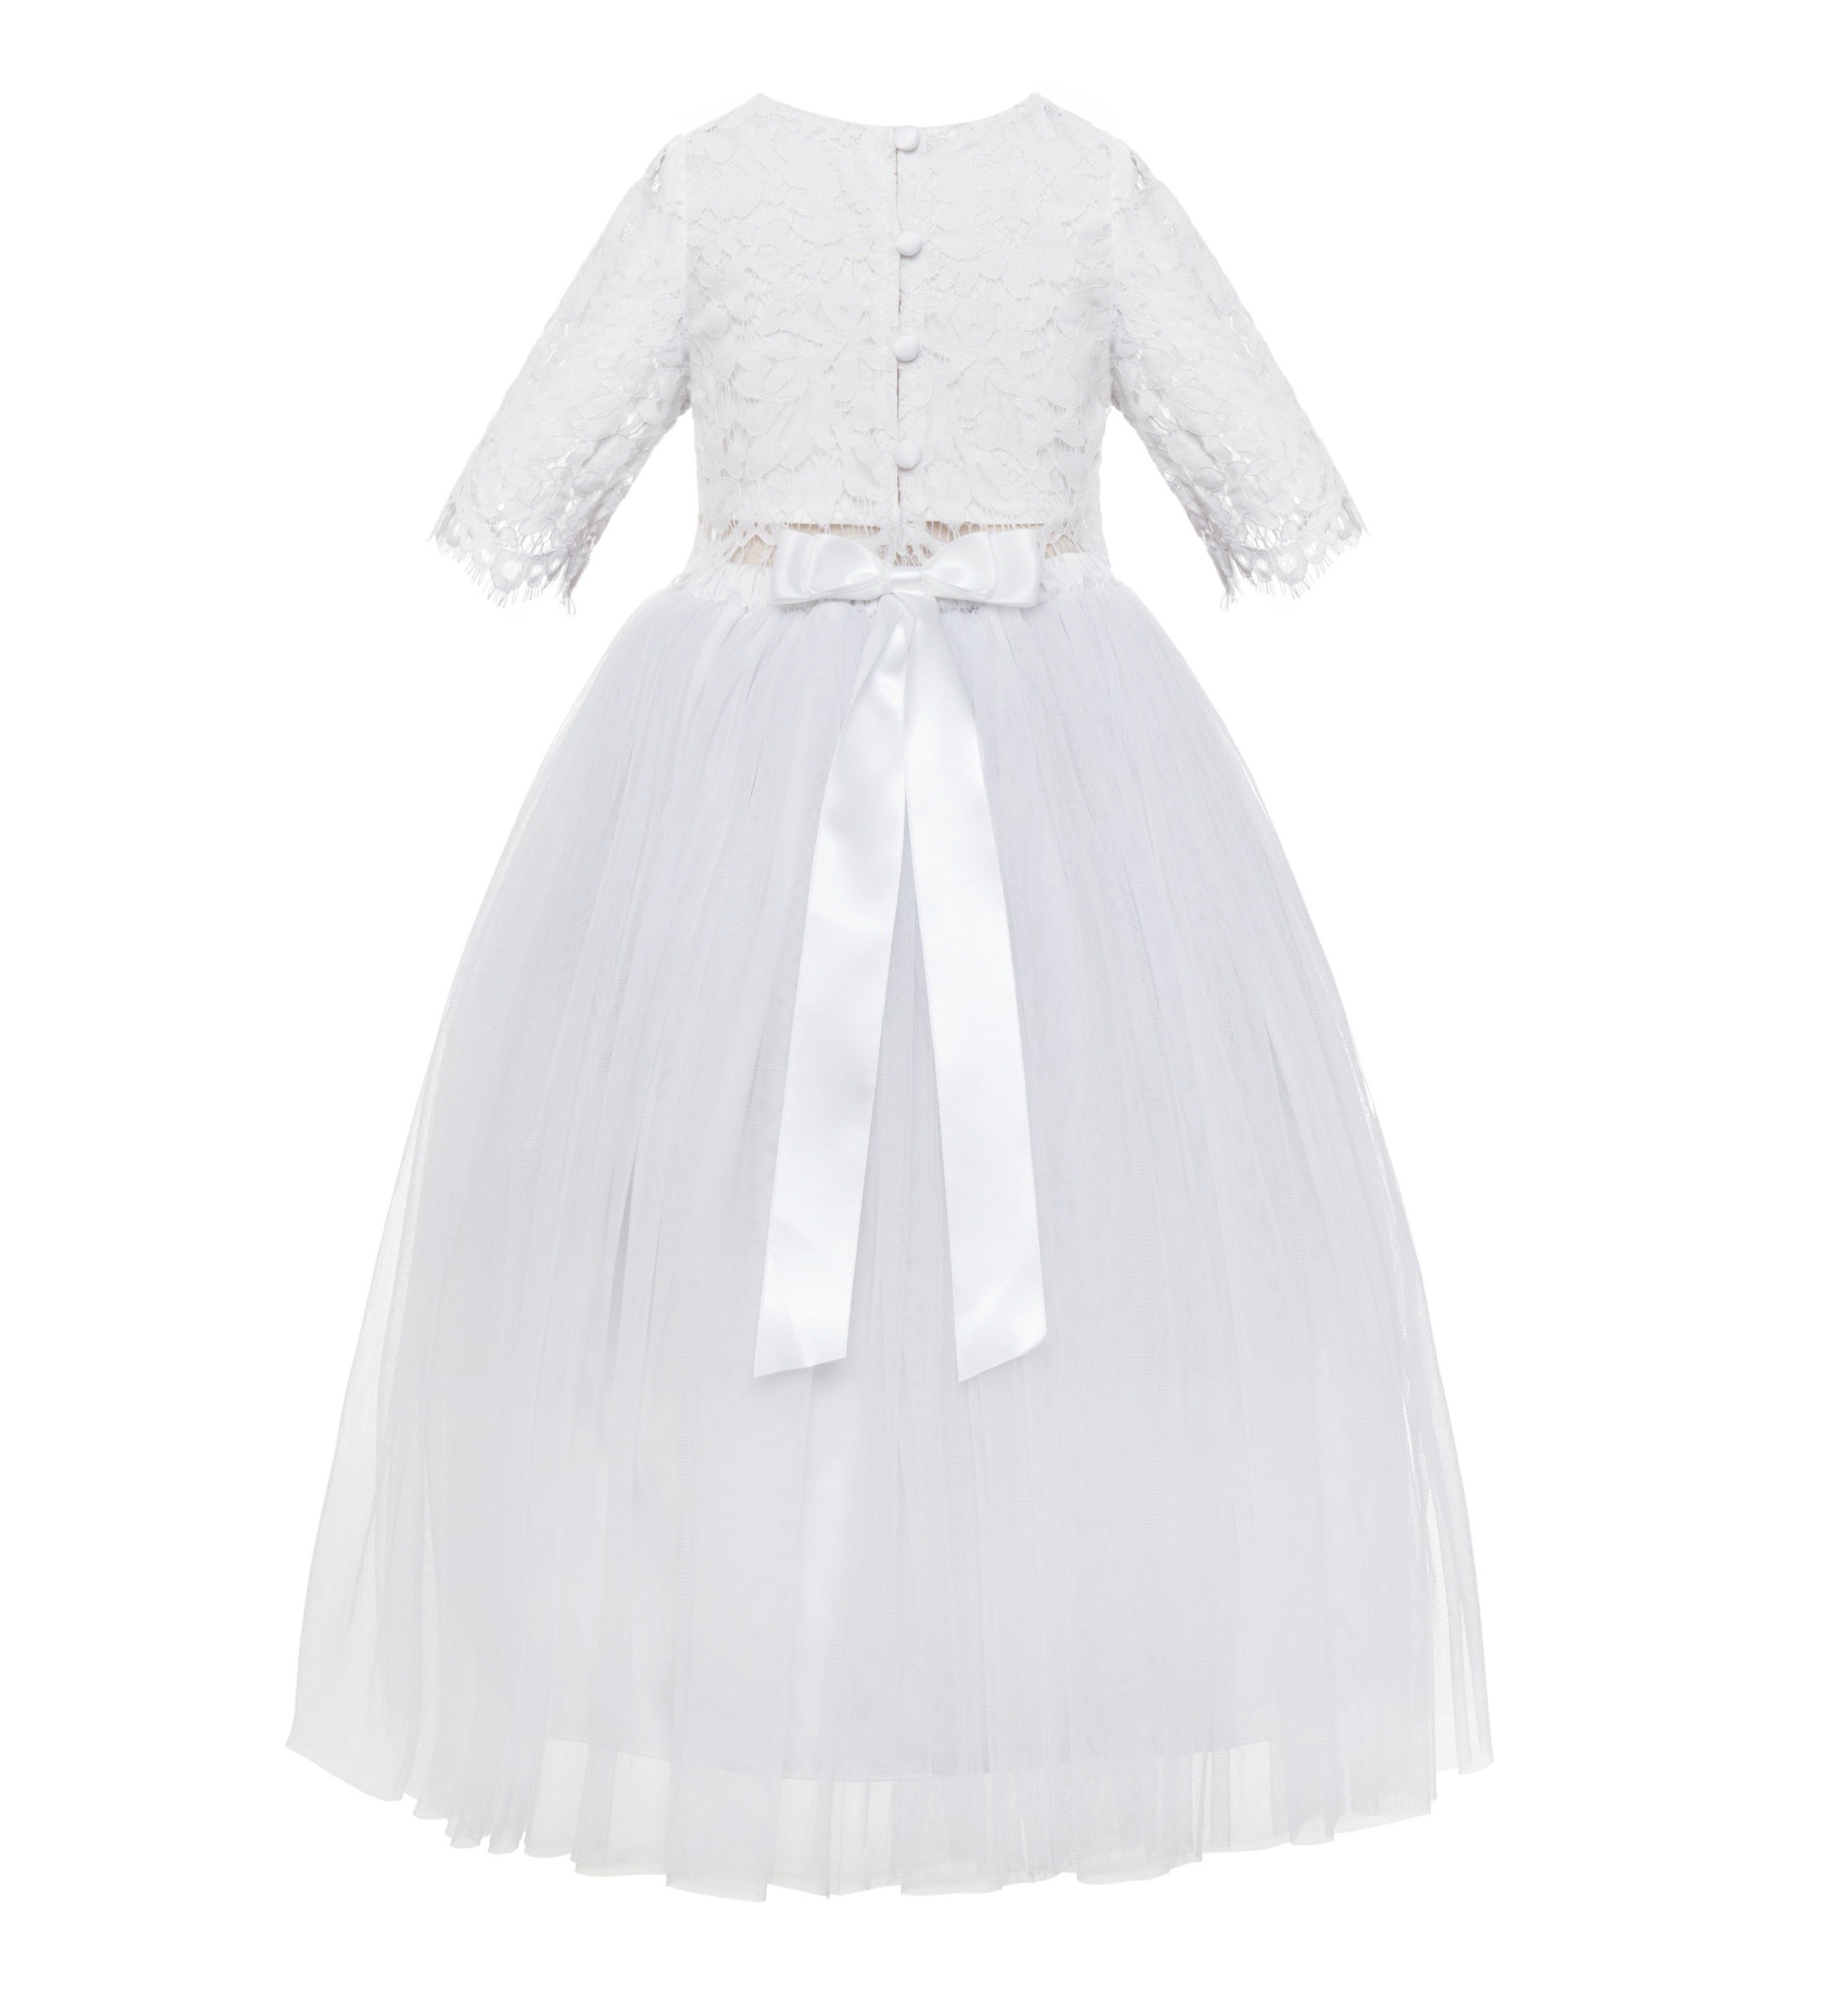 White Eyelash Lace Flower Girl Dress A-Line Tulle Dress LG5